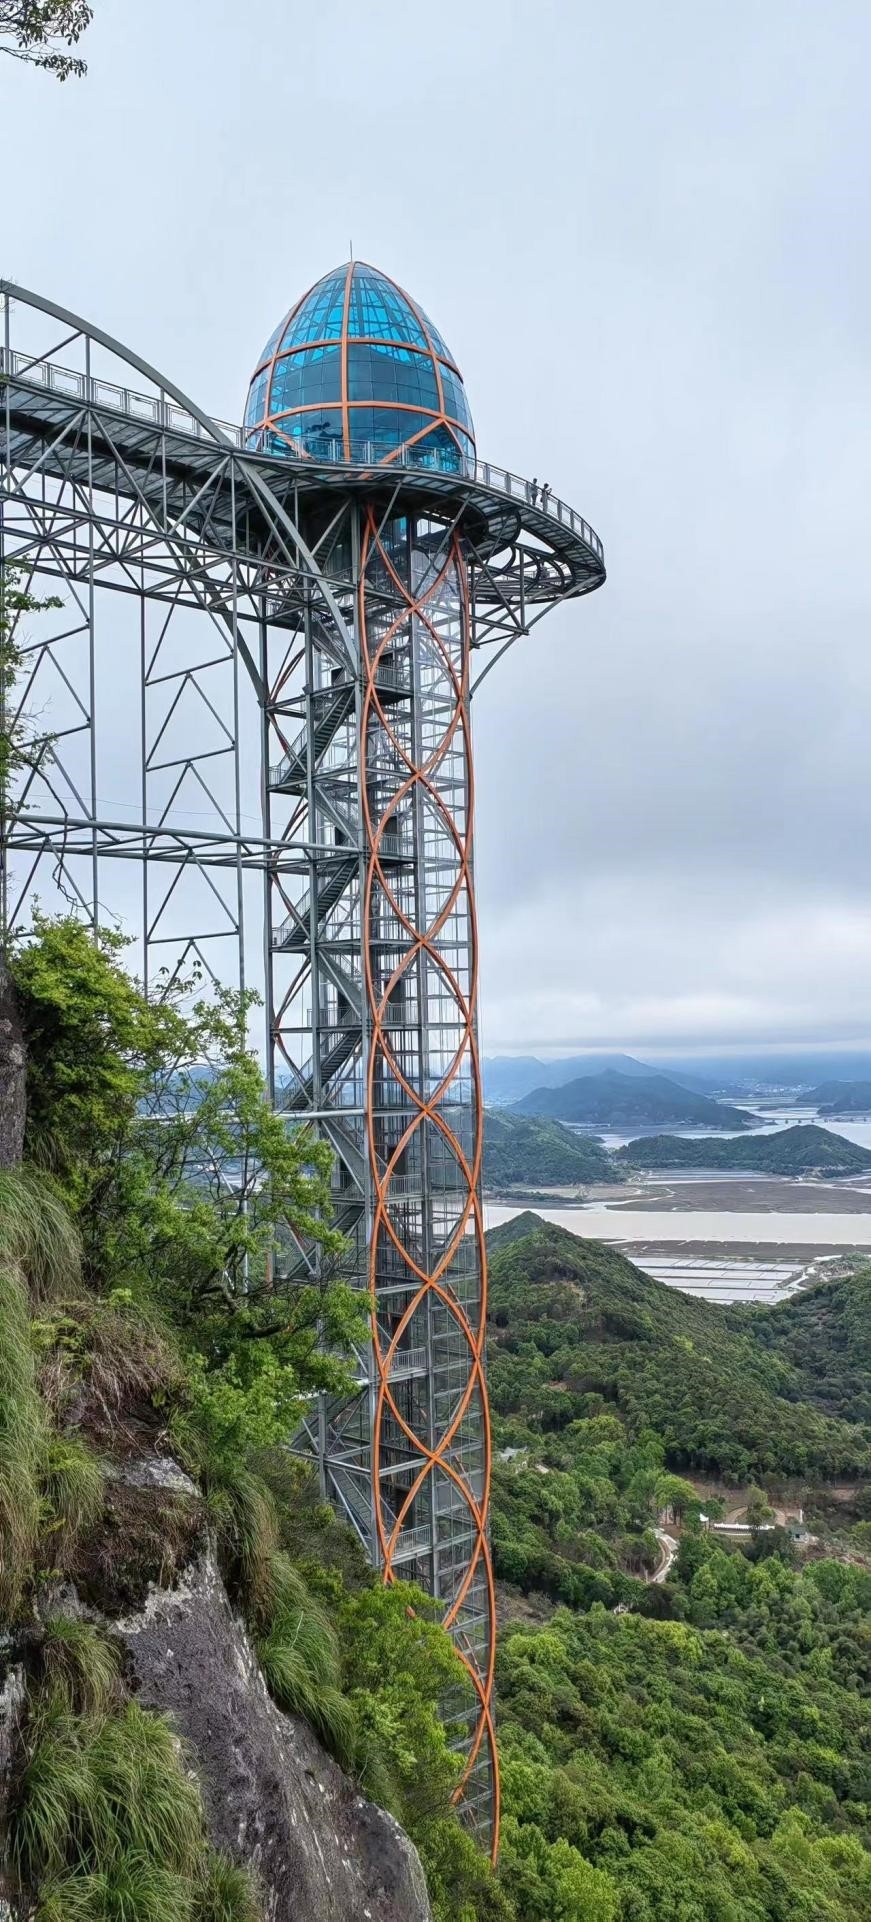 浙江省内最高悬崖观光电梯建成  “体检”来护航